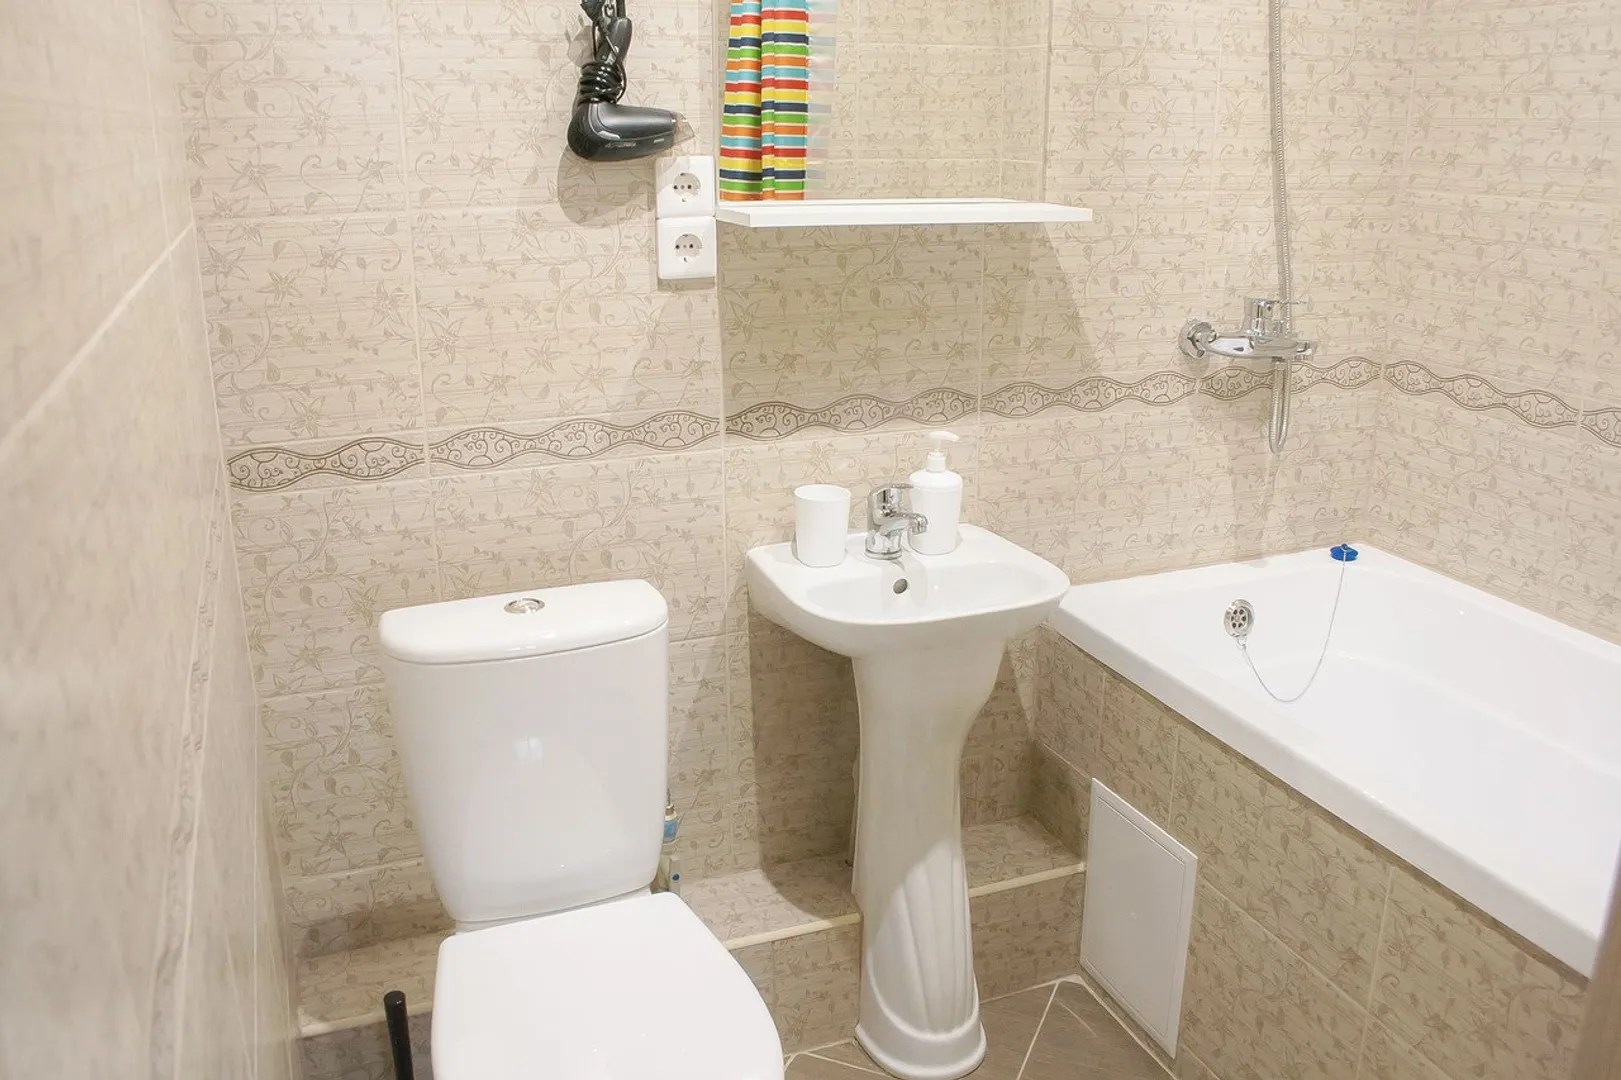 Ванная комната с феном, жидким мылом, гелем для душа и шампунем.